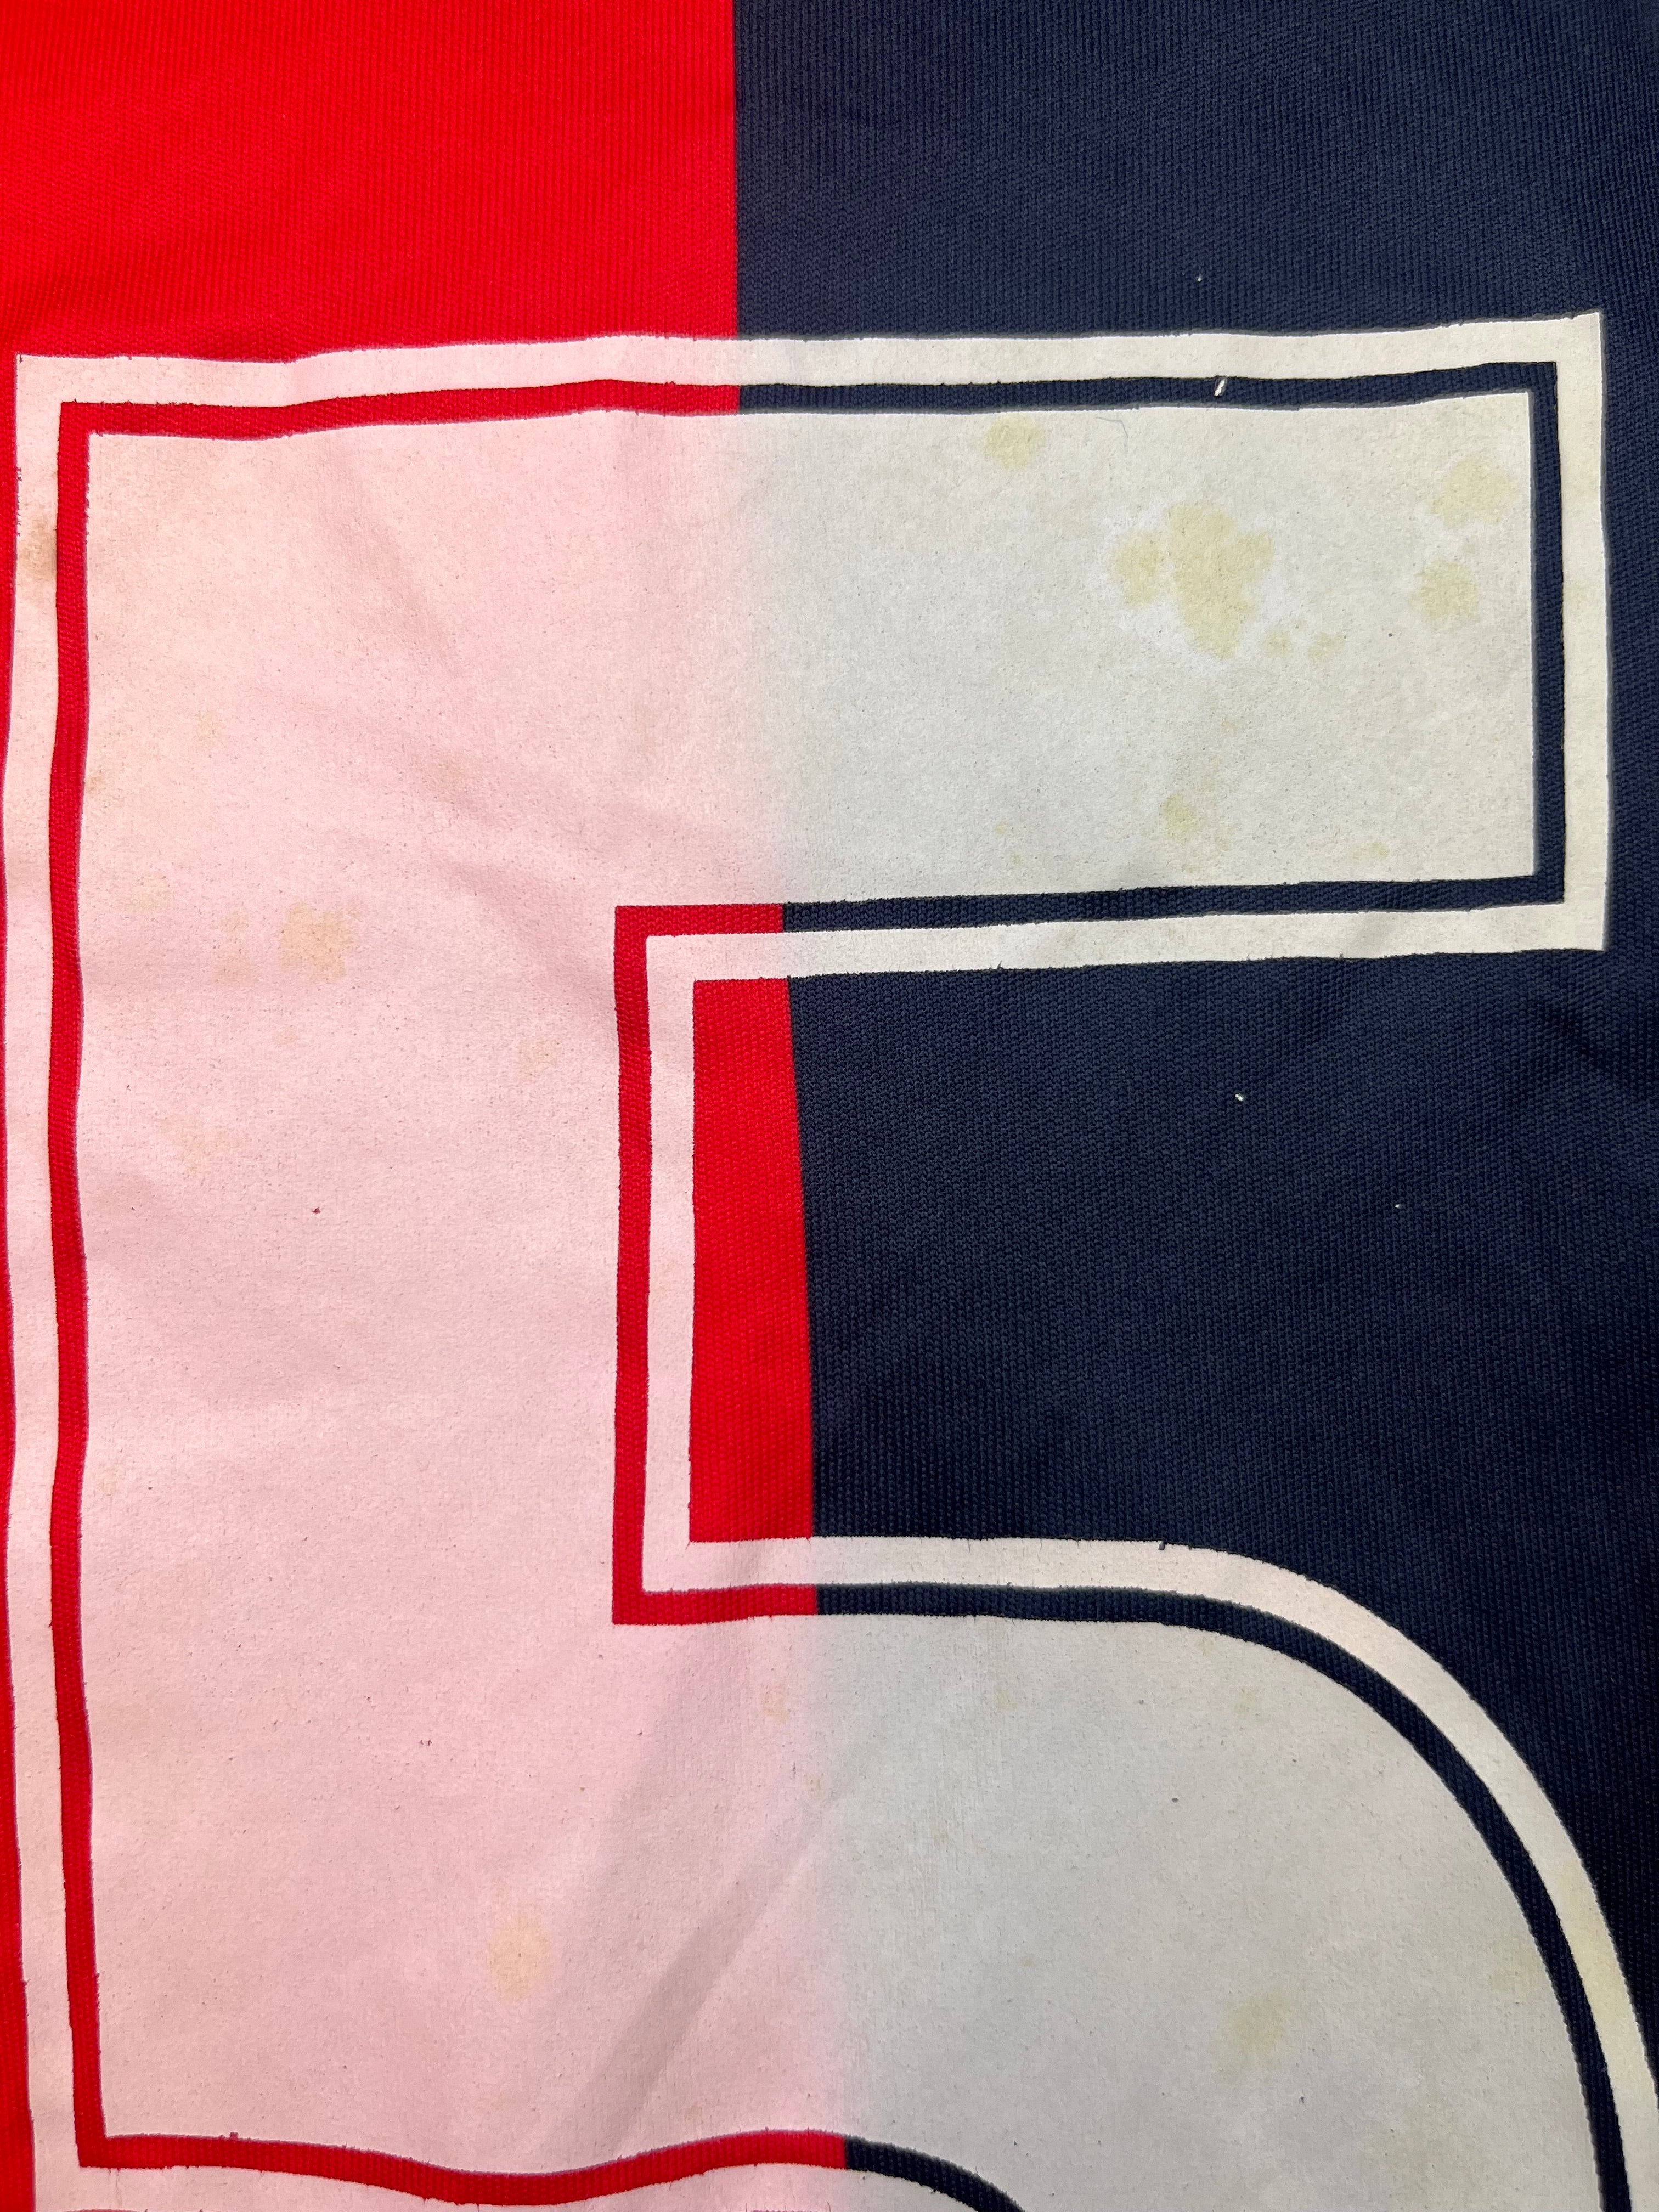 2012/13 Genoa U21’s Home L/S Shirt #5 (XL) 8.5/10